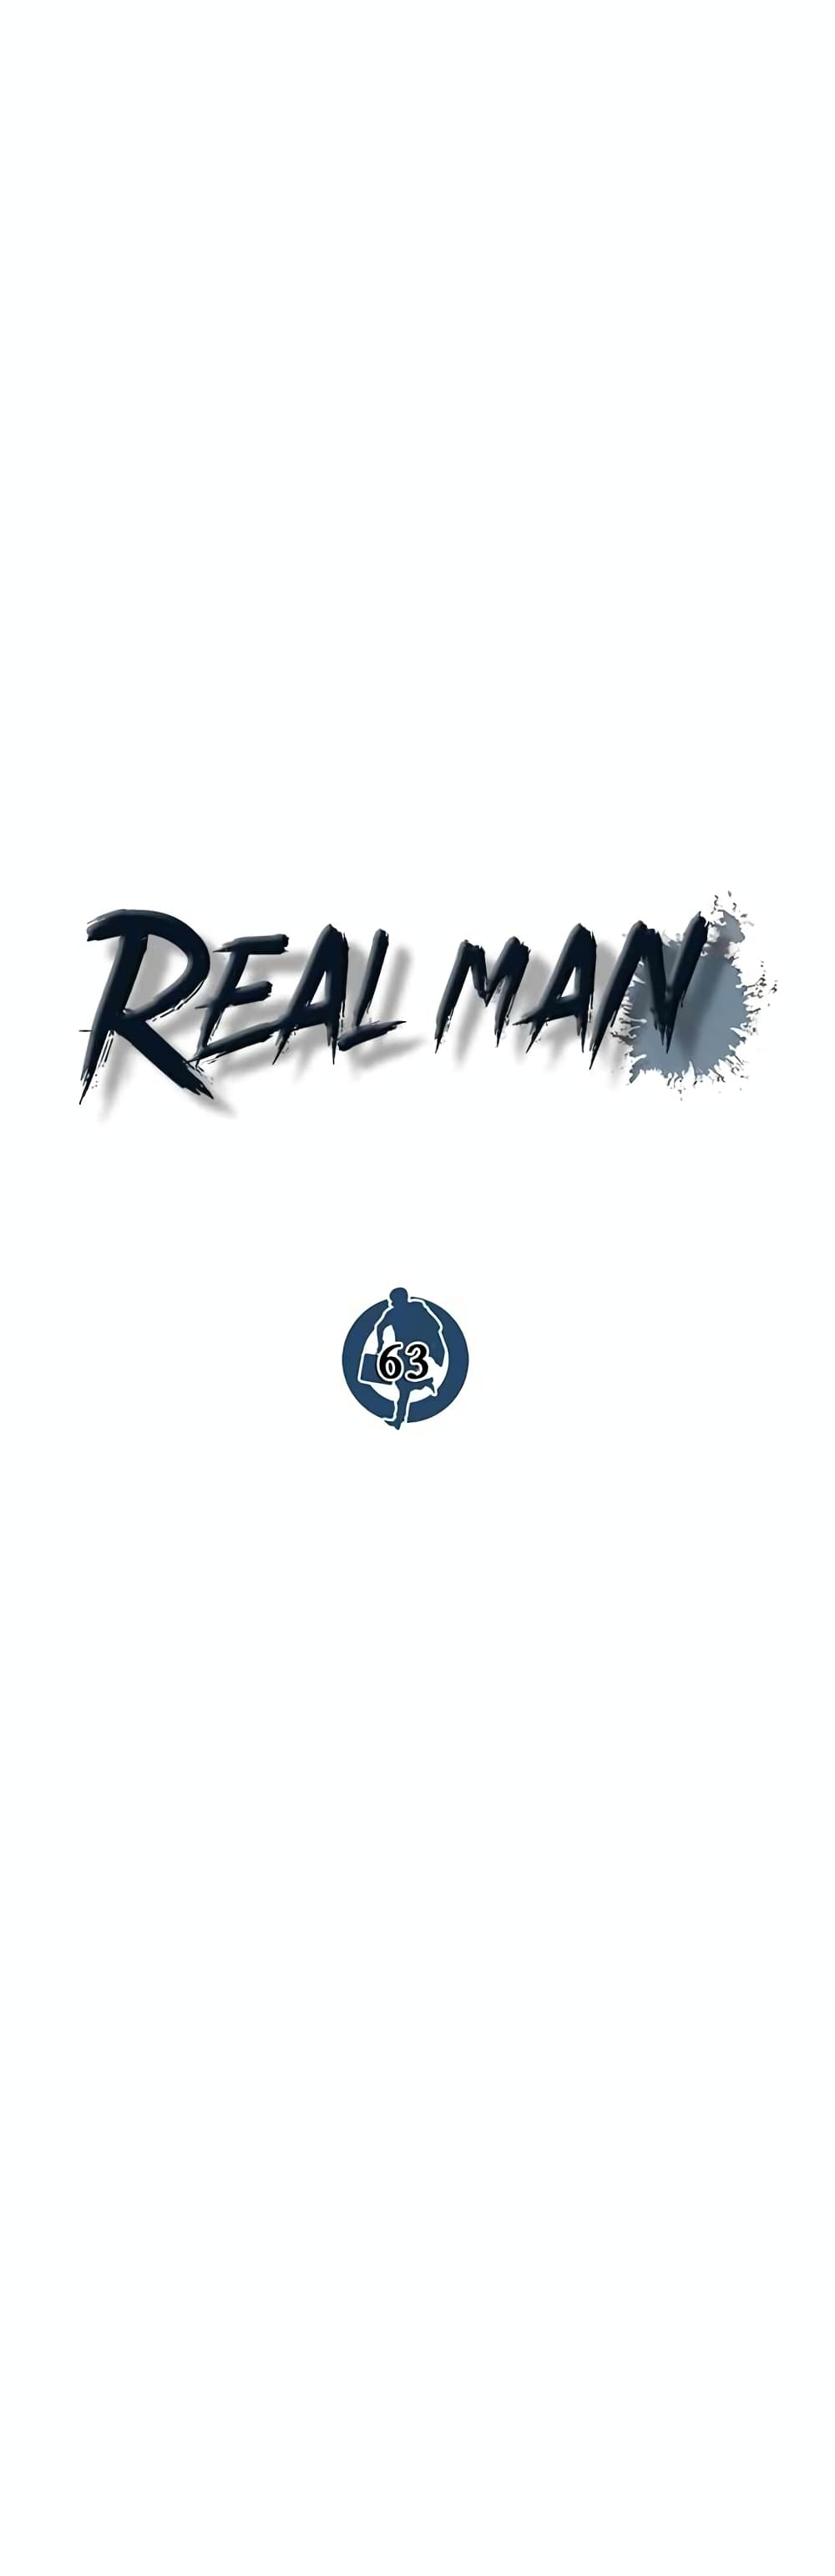 Real Man 63-63